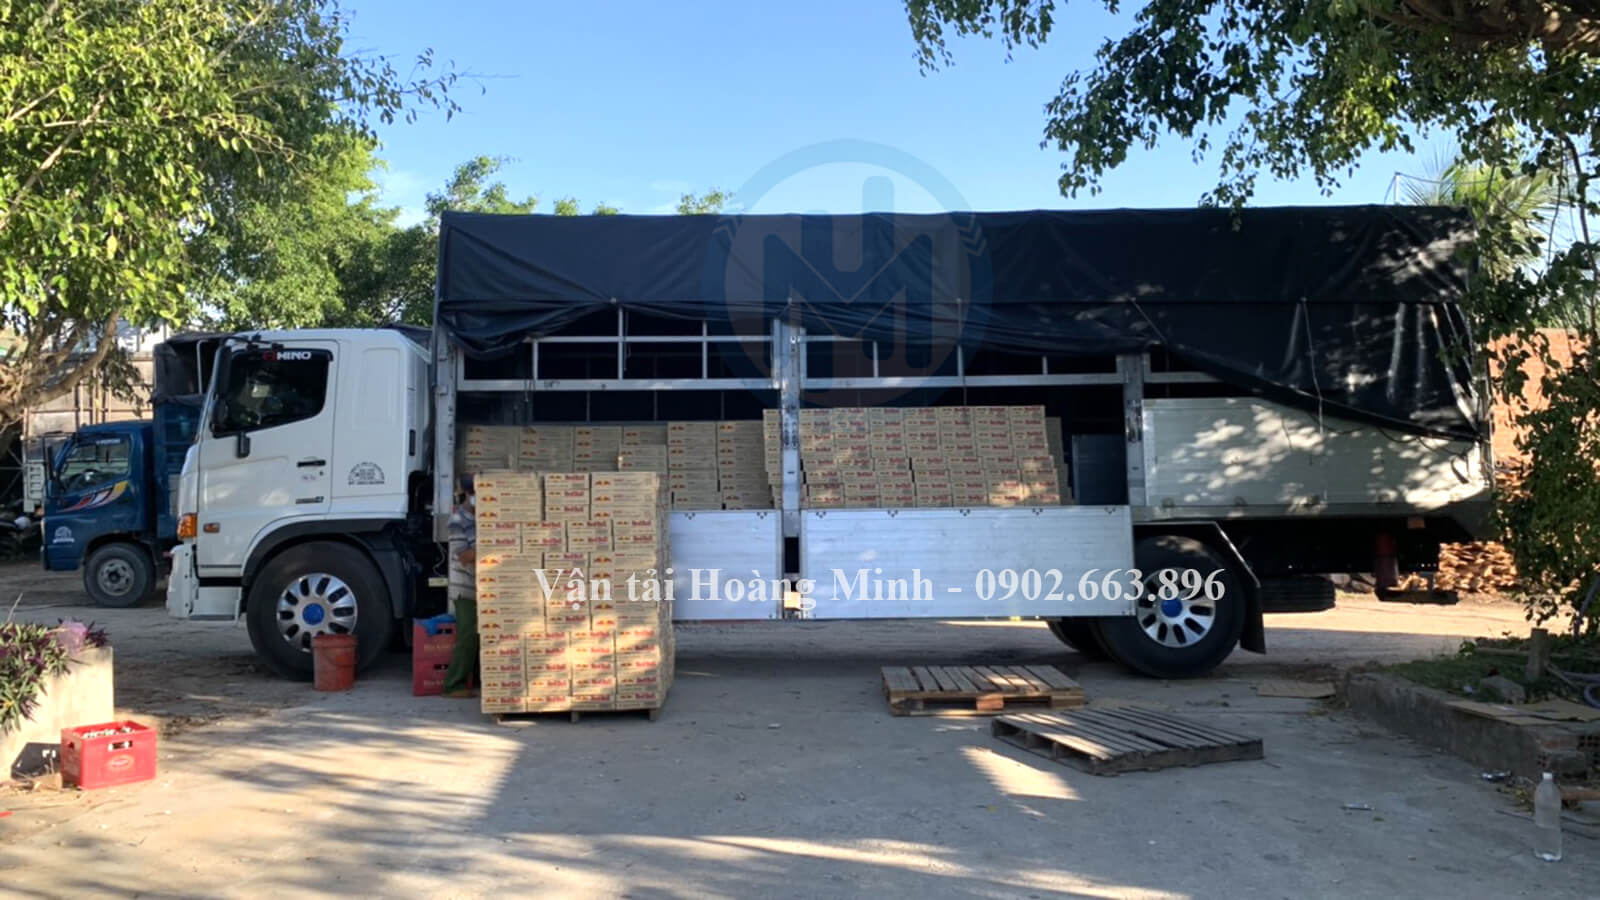 Hình ảnh xe tải Hoàng Minh chở hàng linh kiện điện tử cho khách tại Phong Điền đi Long An.jpg